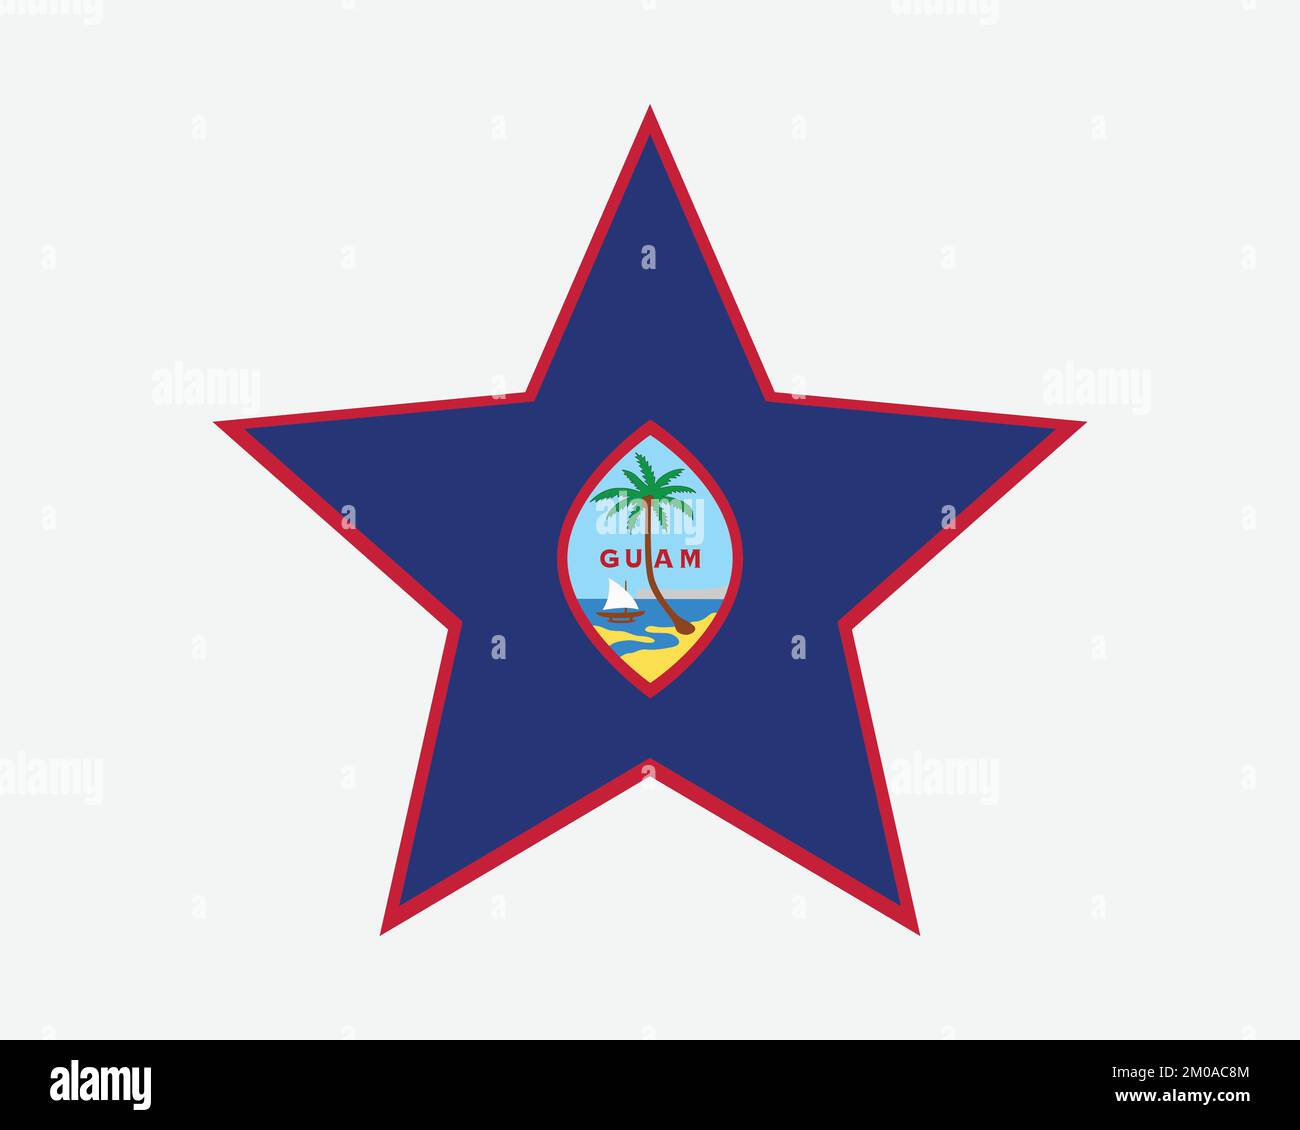 Drapeau Guam Star. Drapeau guamanien en forme d'étoile. Icône de bannière non incorporée et organisée du territoire des États-Unis symbole Illustration vectorielle plate Illustration graphique Illustration de Vecteur